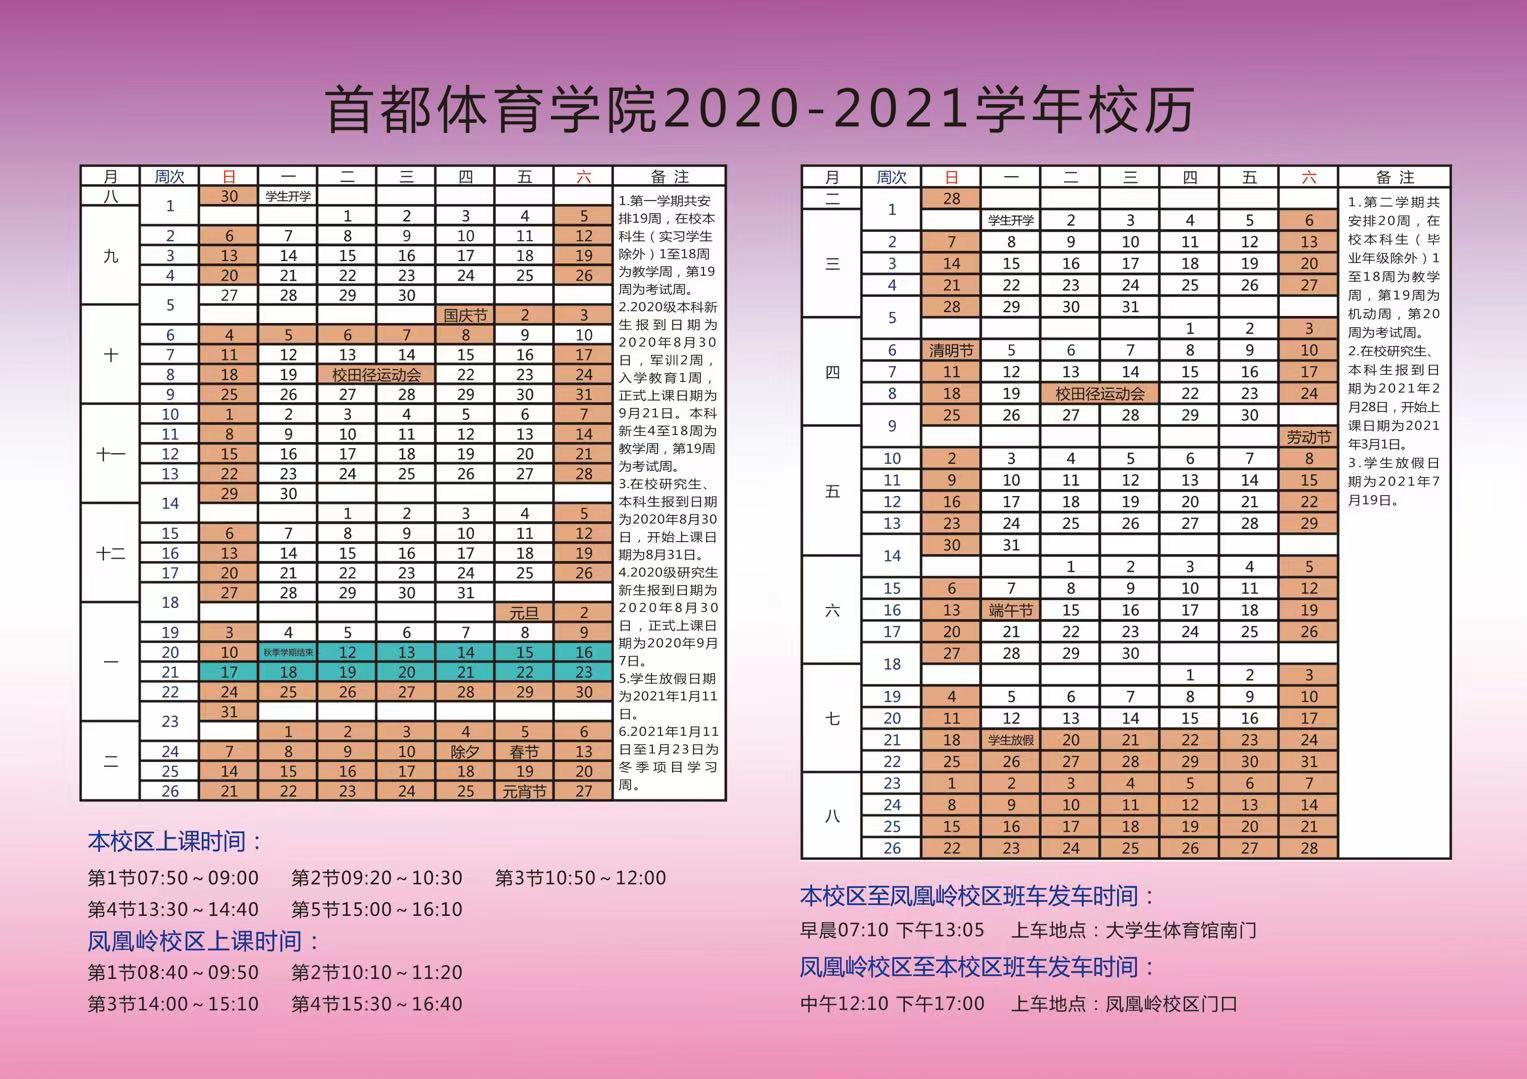 首都体育学院2020-2021学年度校历.jpg